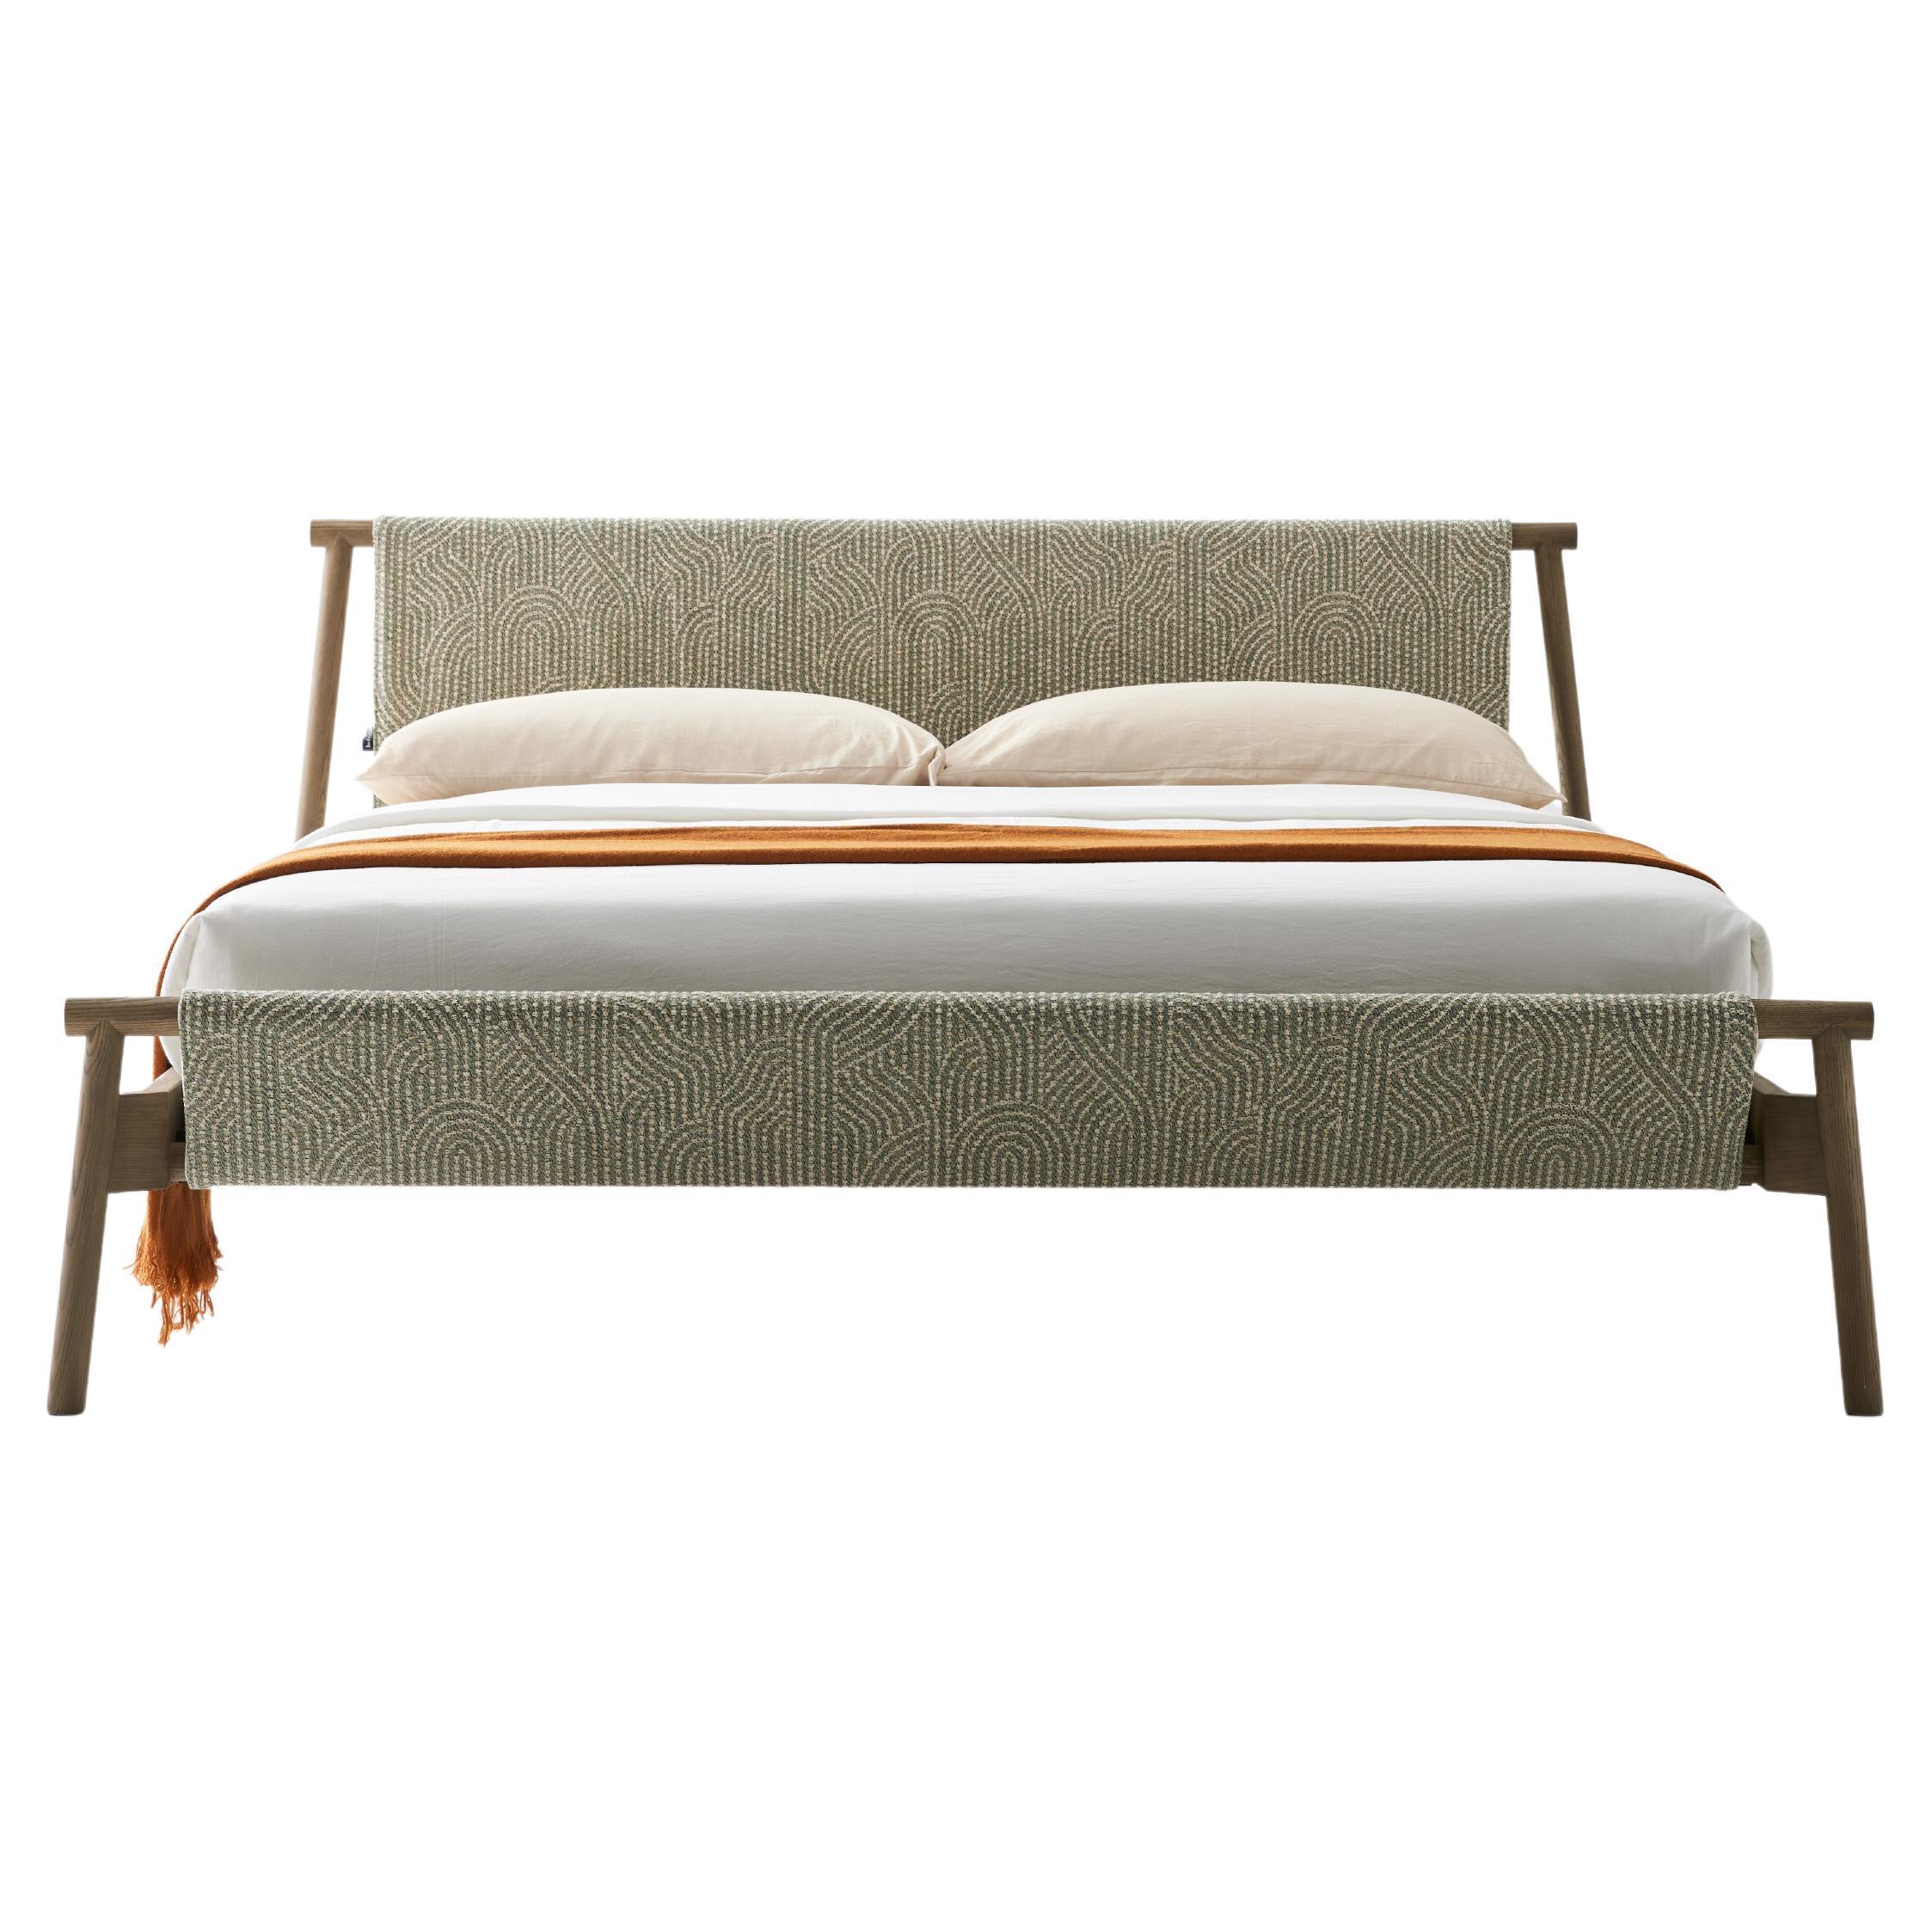 Bolzan  Jack-e Fabric Bed by Zanellato and Bortotto Design For Sale